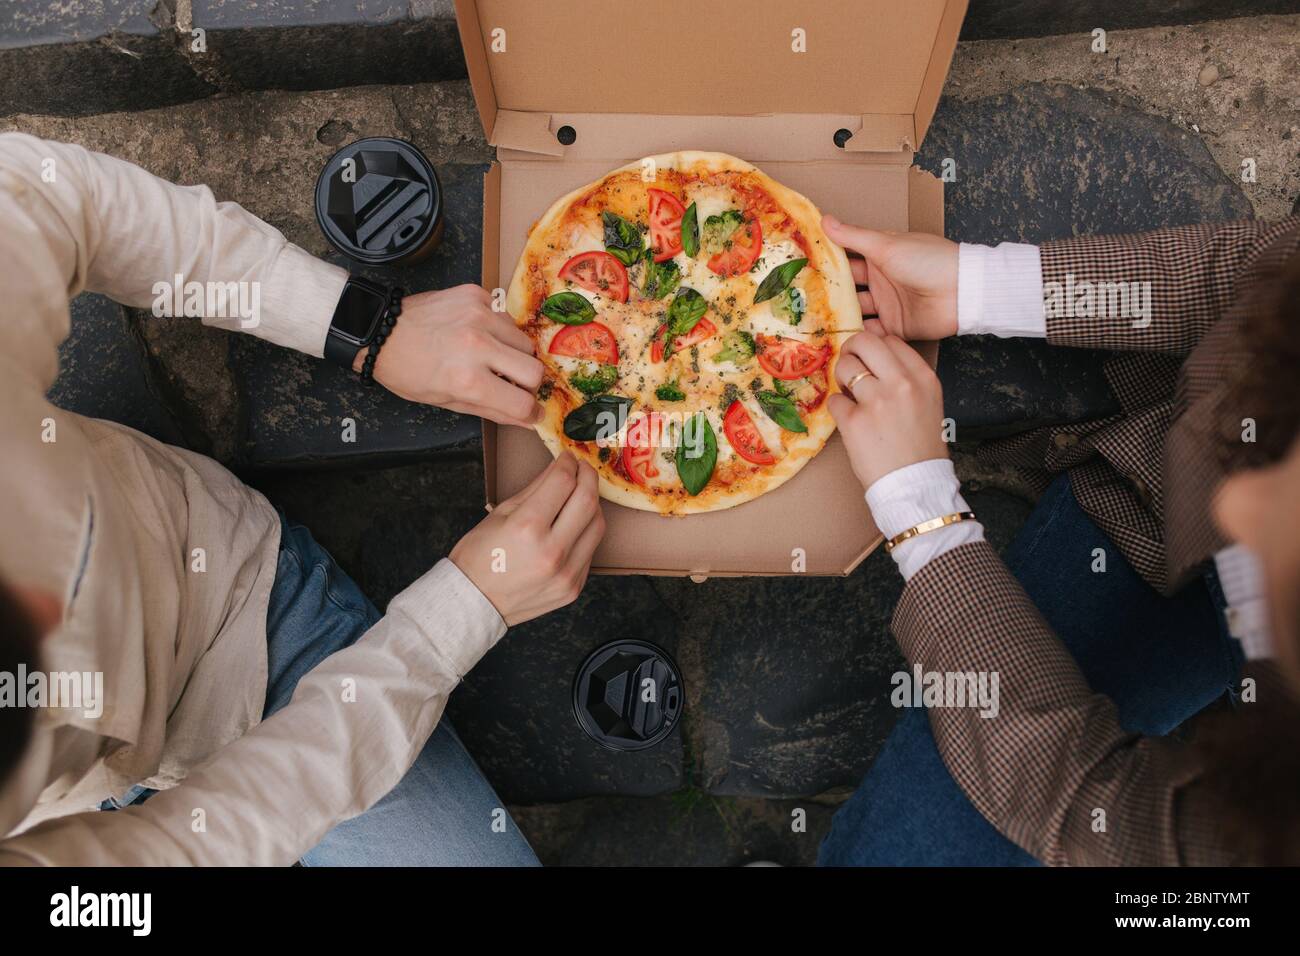 Draufsicht Bild von paar Schnapp Scheiben Pizza aus der Box im Freien. Mann und Frau Hände, die Pizza nehmen. Vegane Pizza mit frischen Tomaten Basilikum und Stockfoto